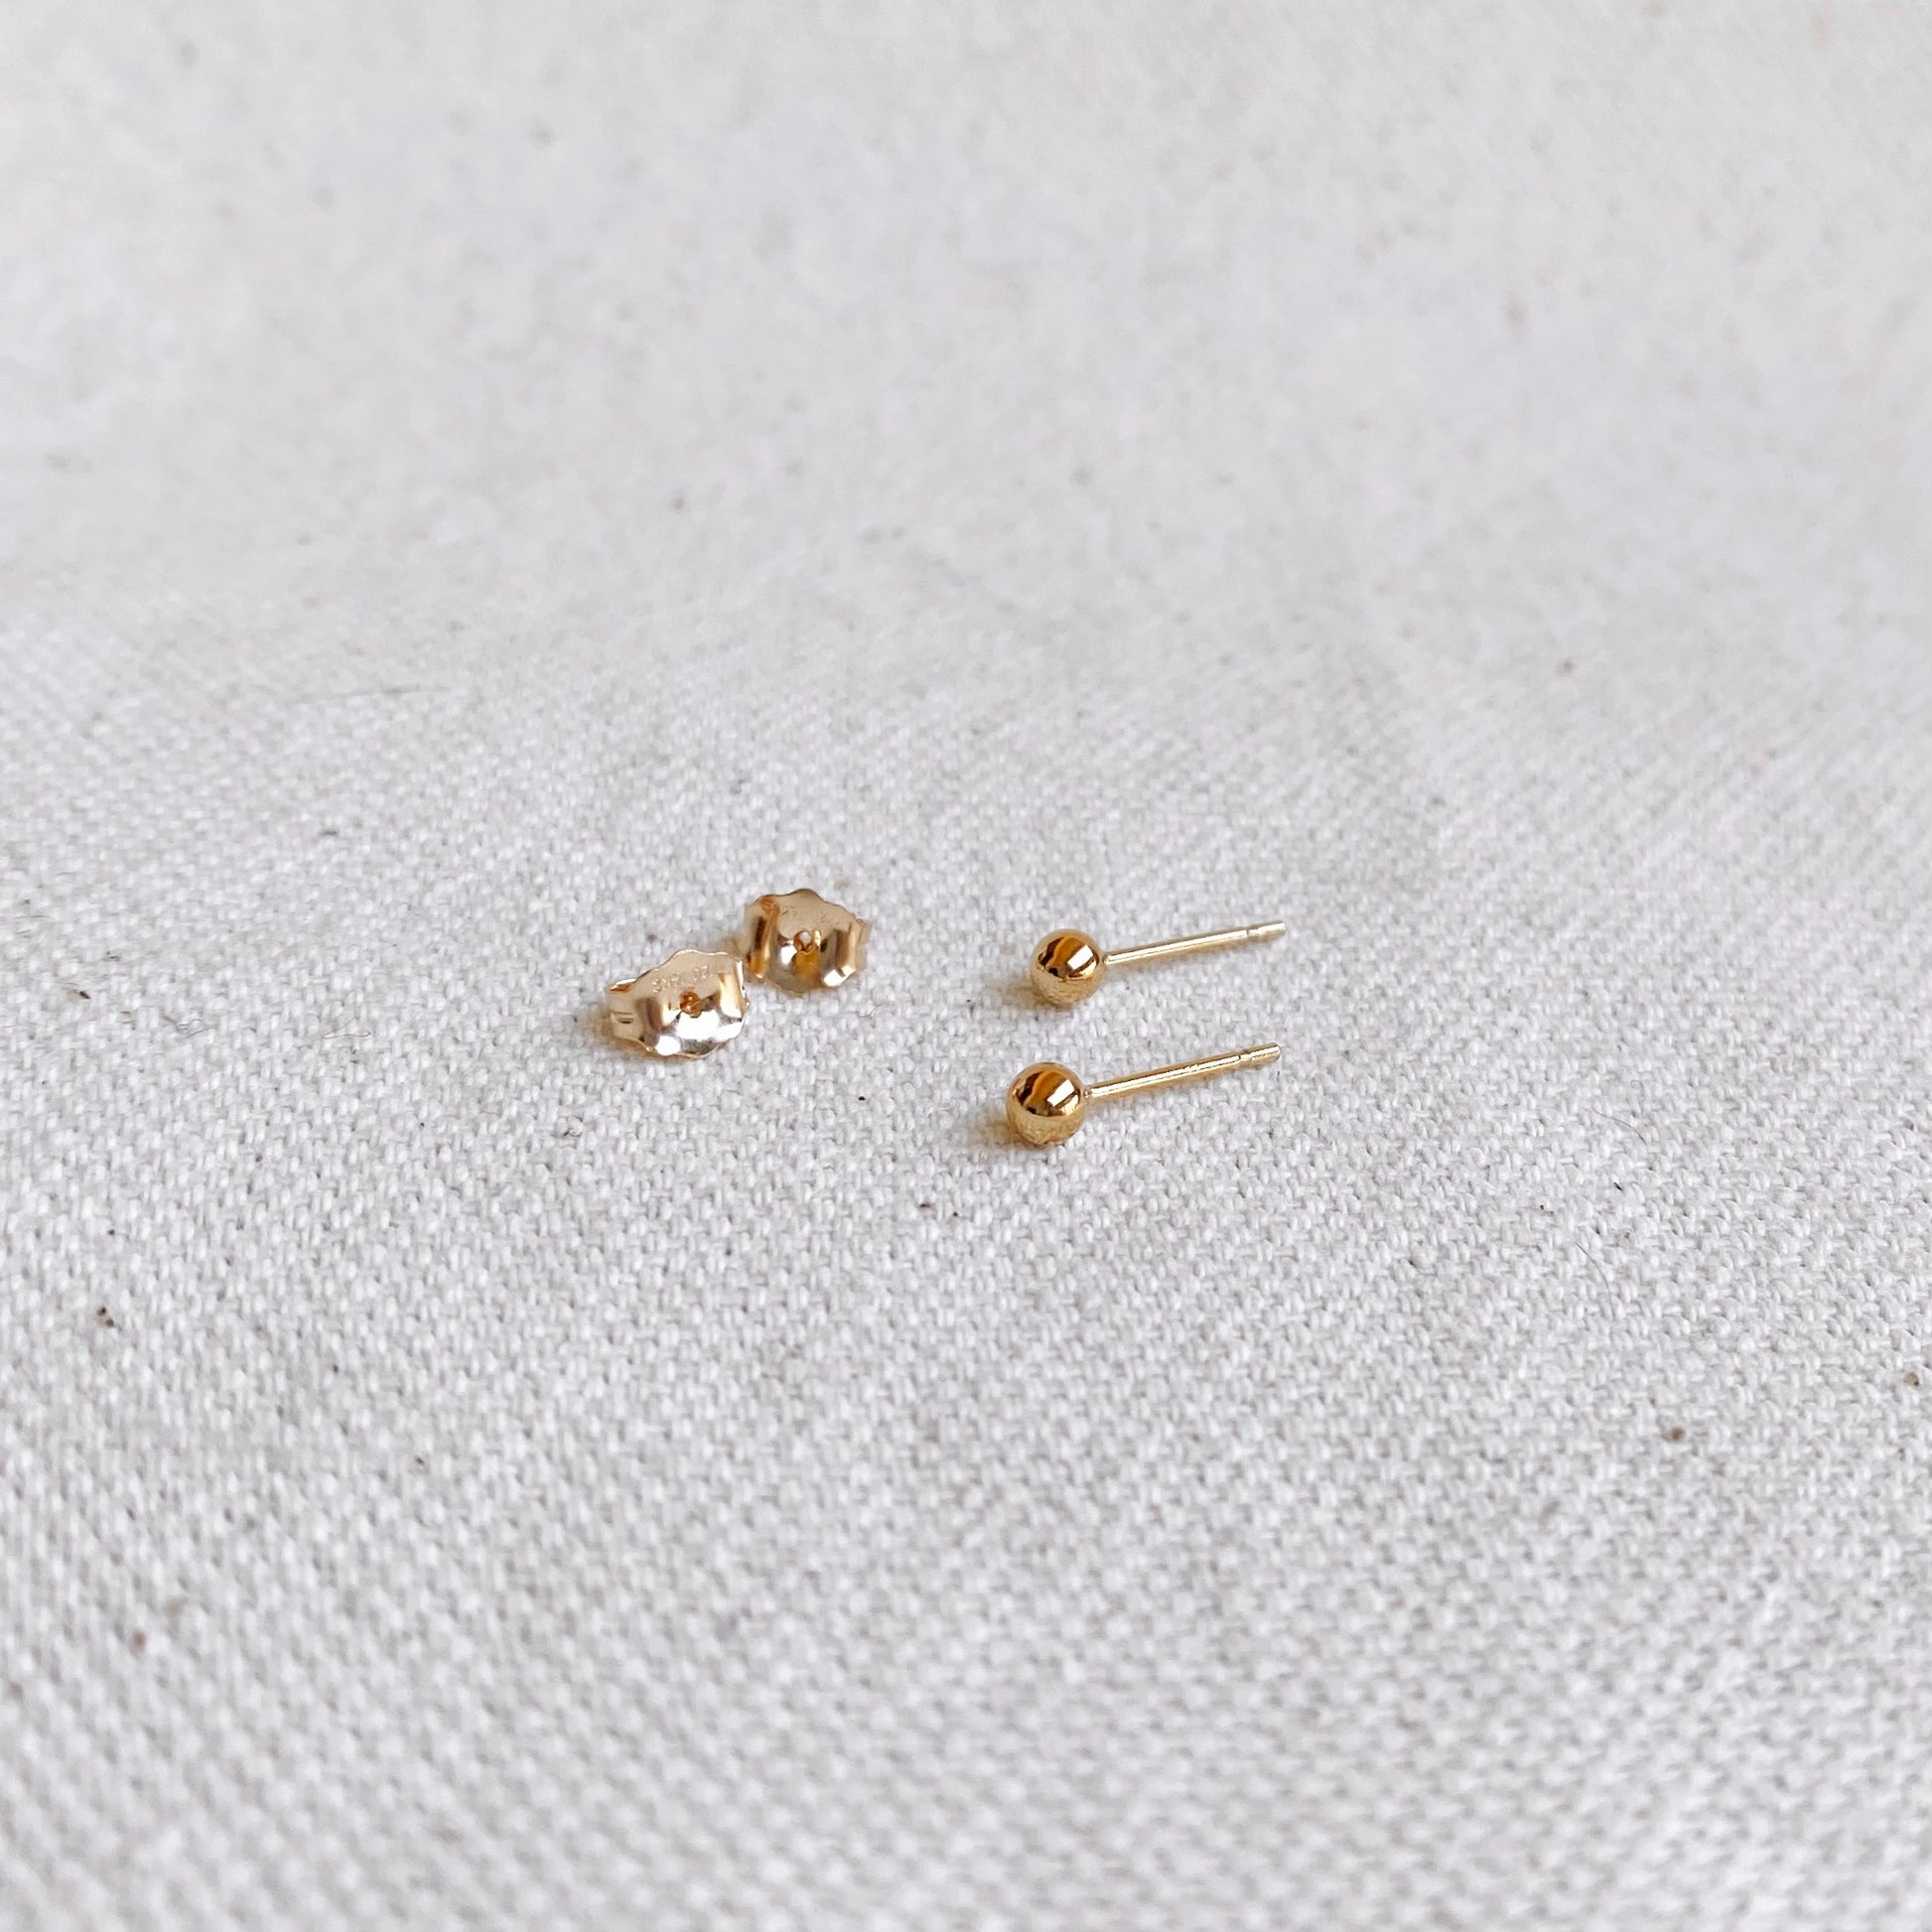 GoldFi 14k Gold Filled 3.0mm Ball Stud Earring